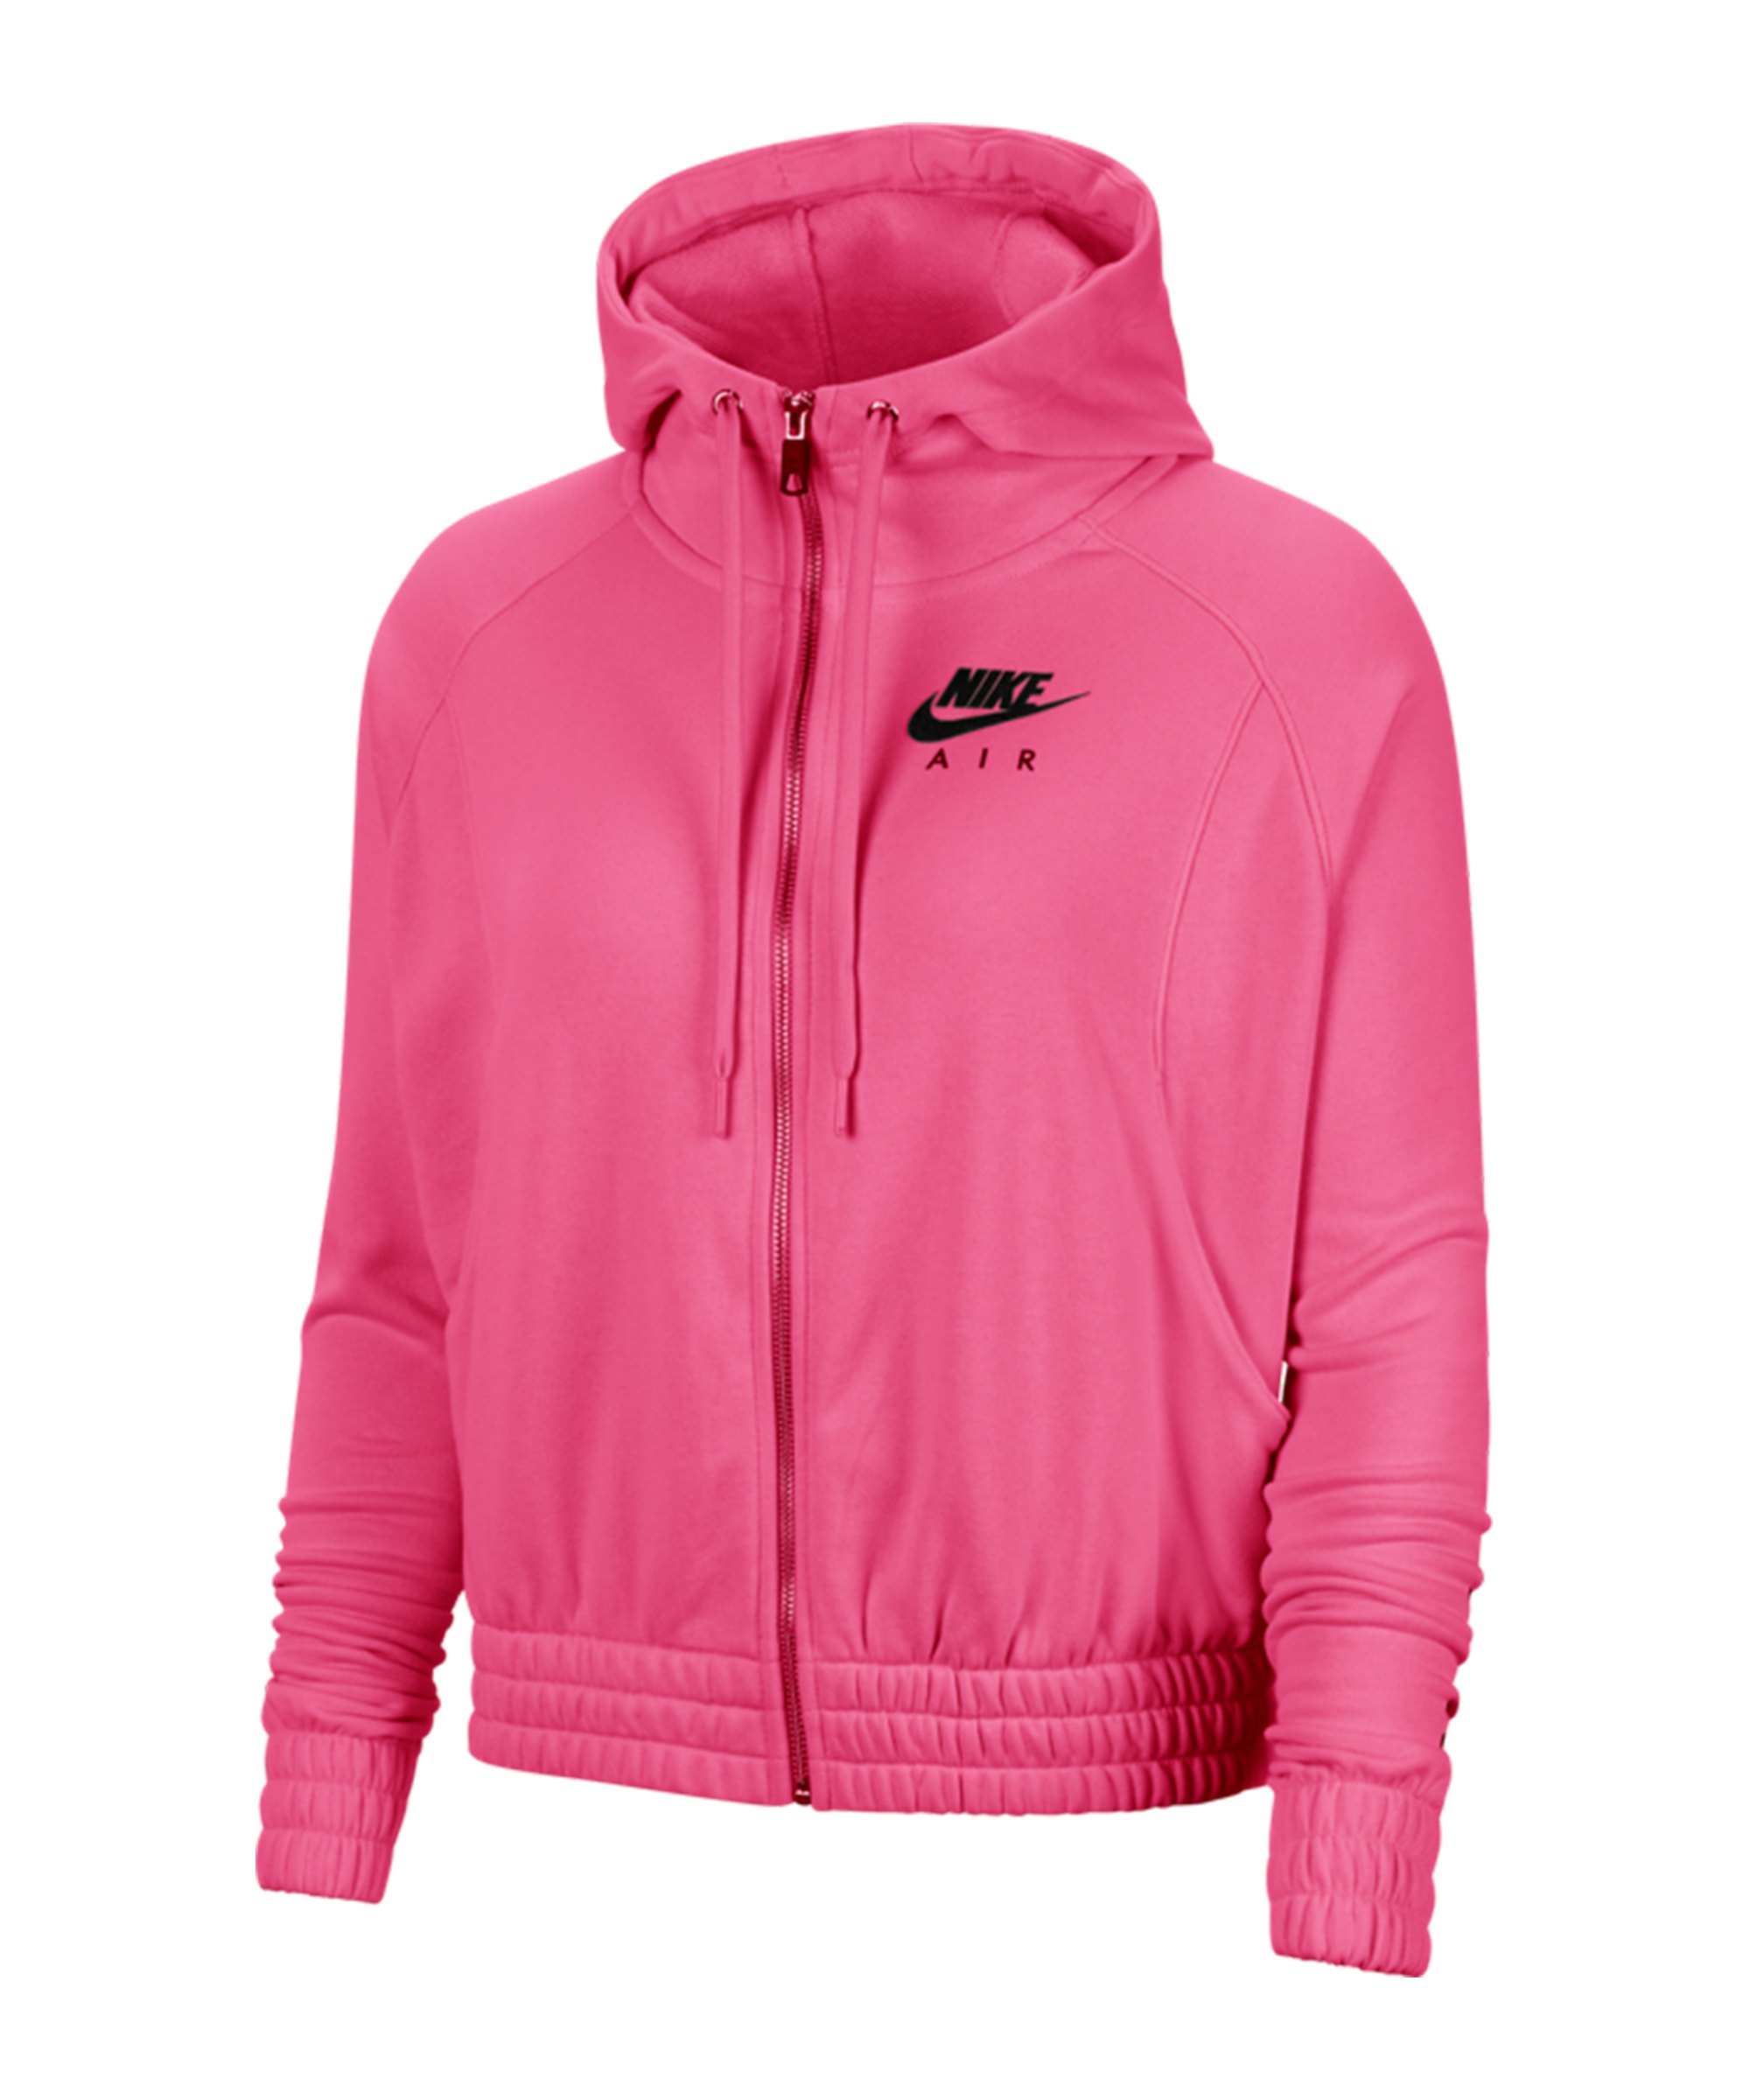 Nike Air Kapuzenjacke Pink F684 - pink